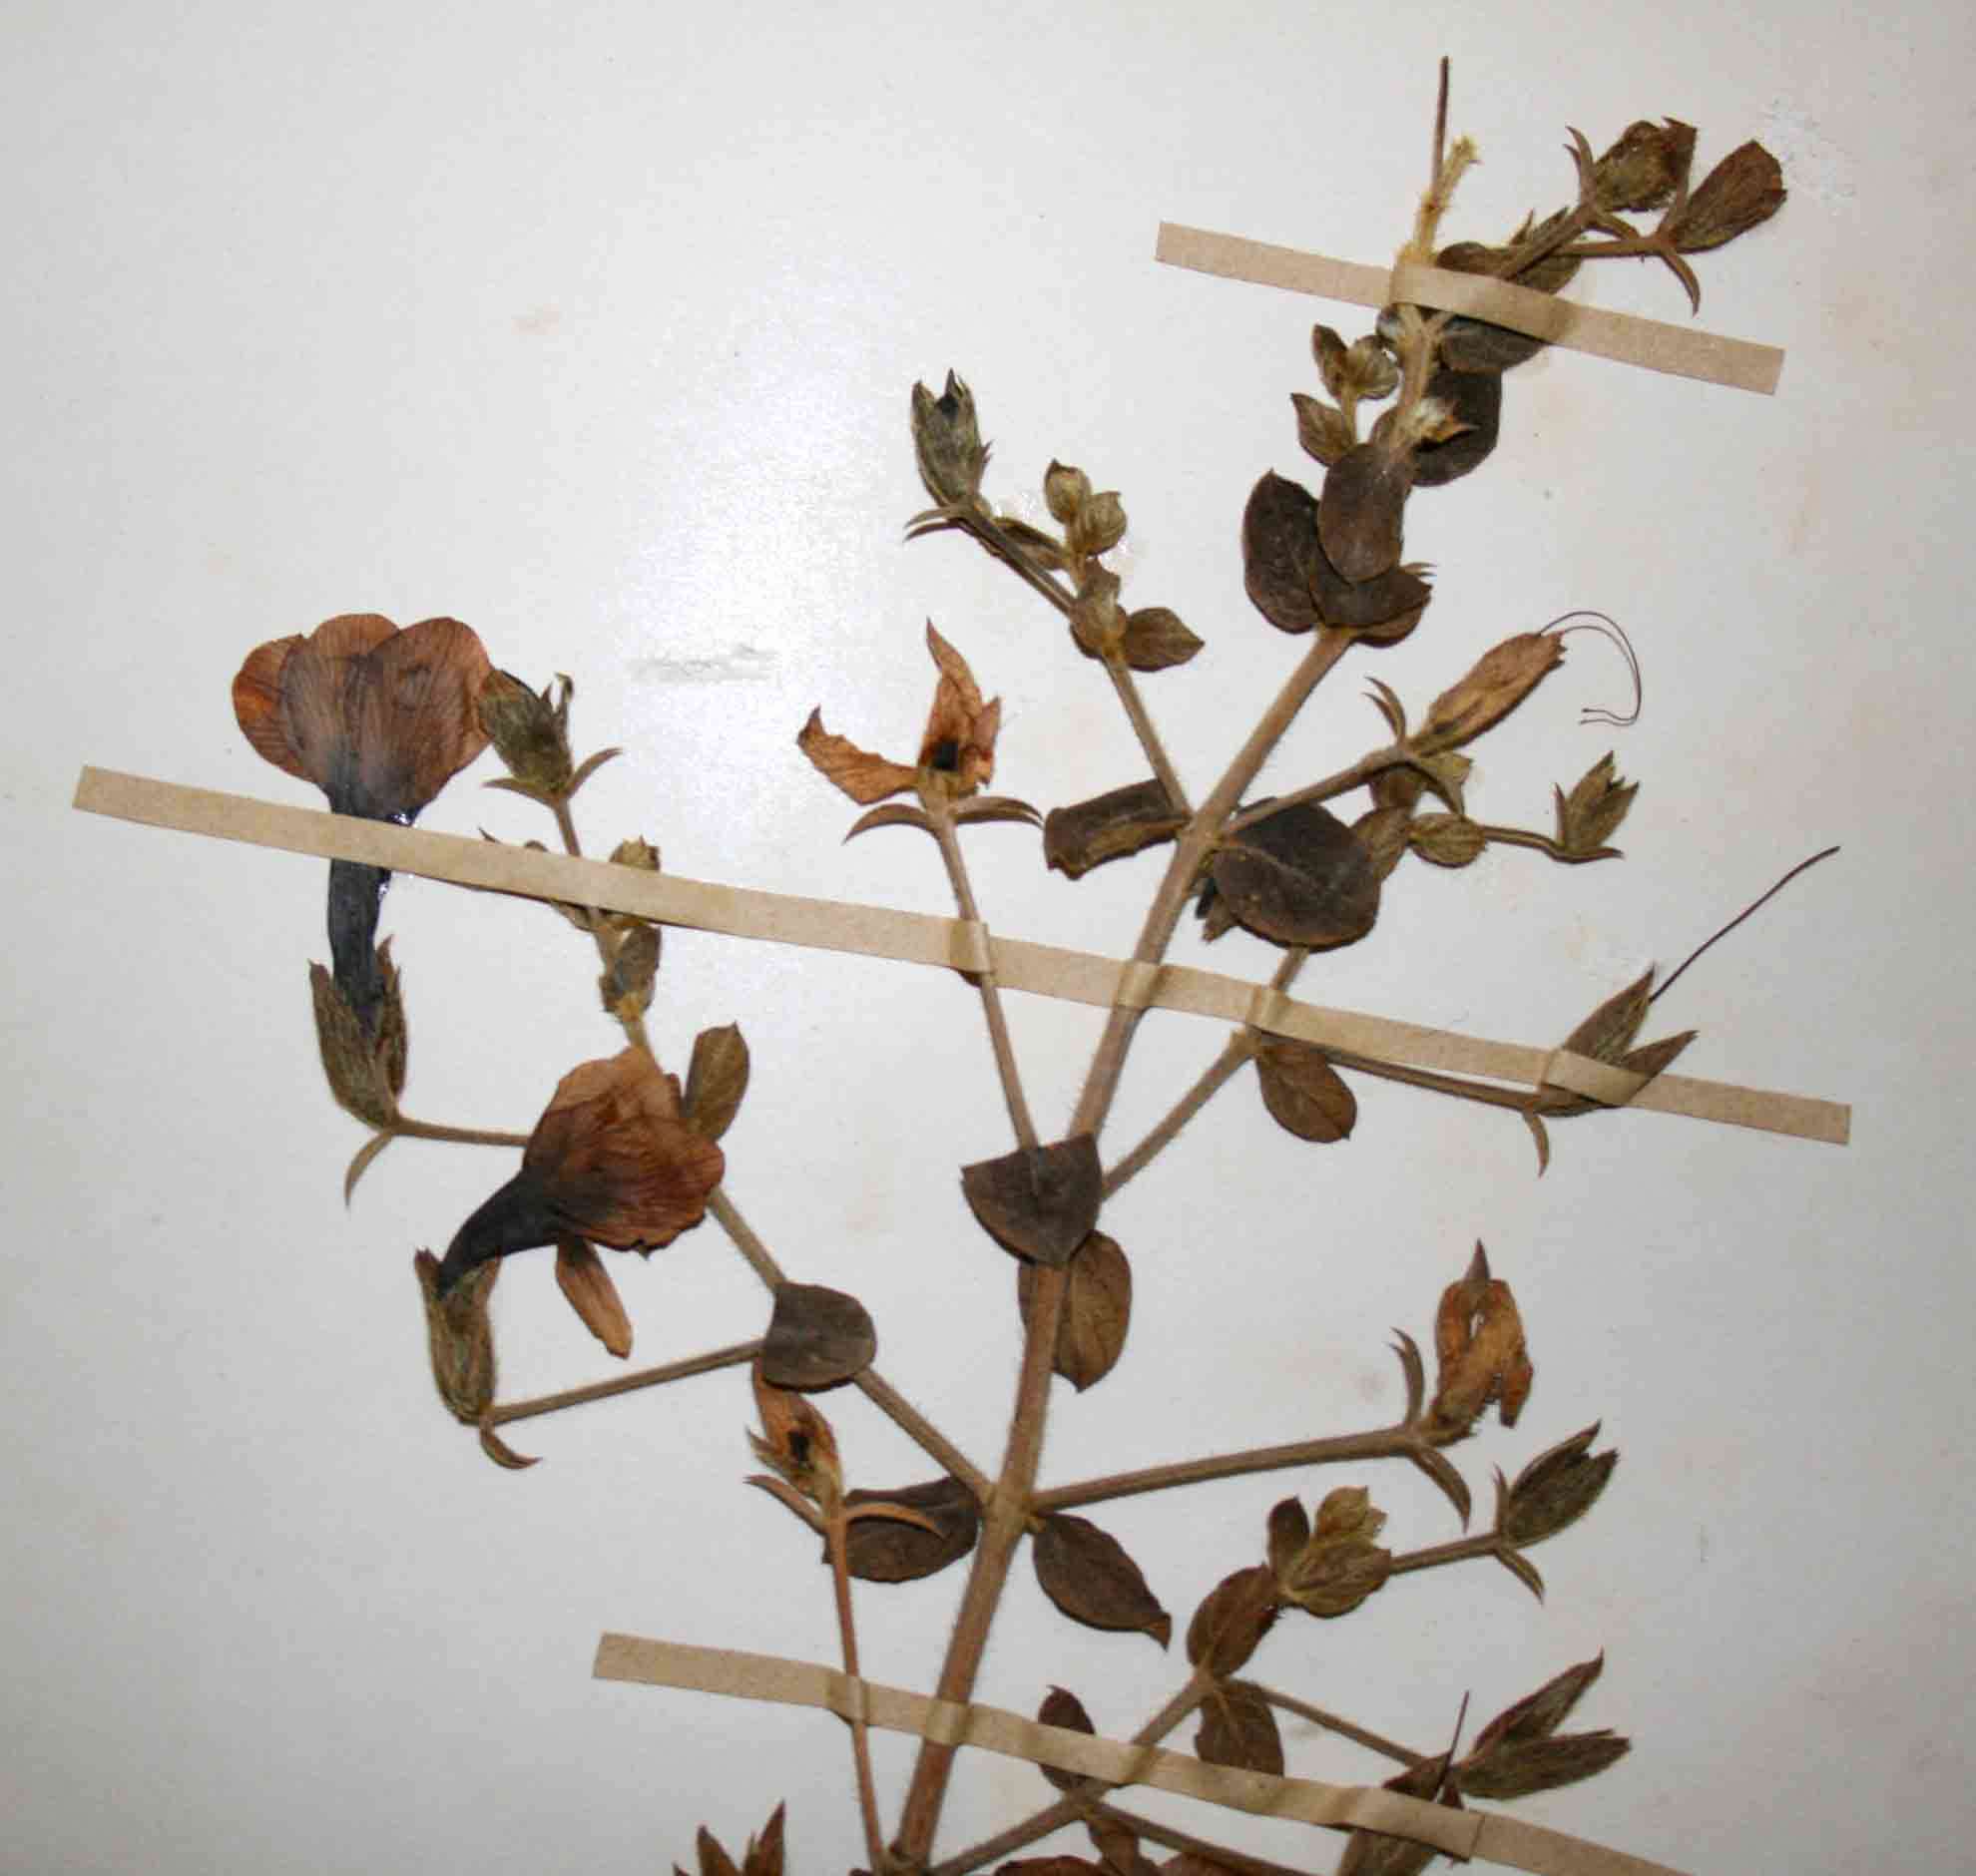 Image of Barleria aromatica Oberm.